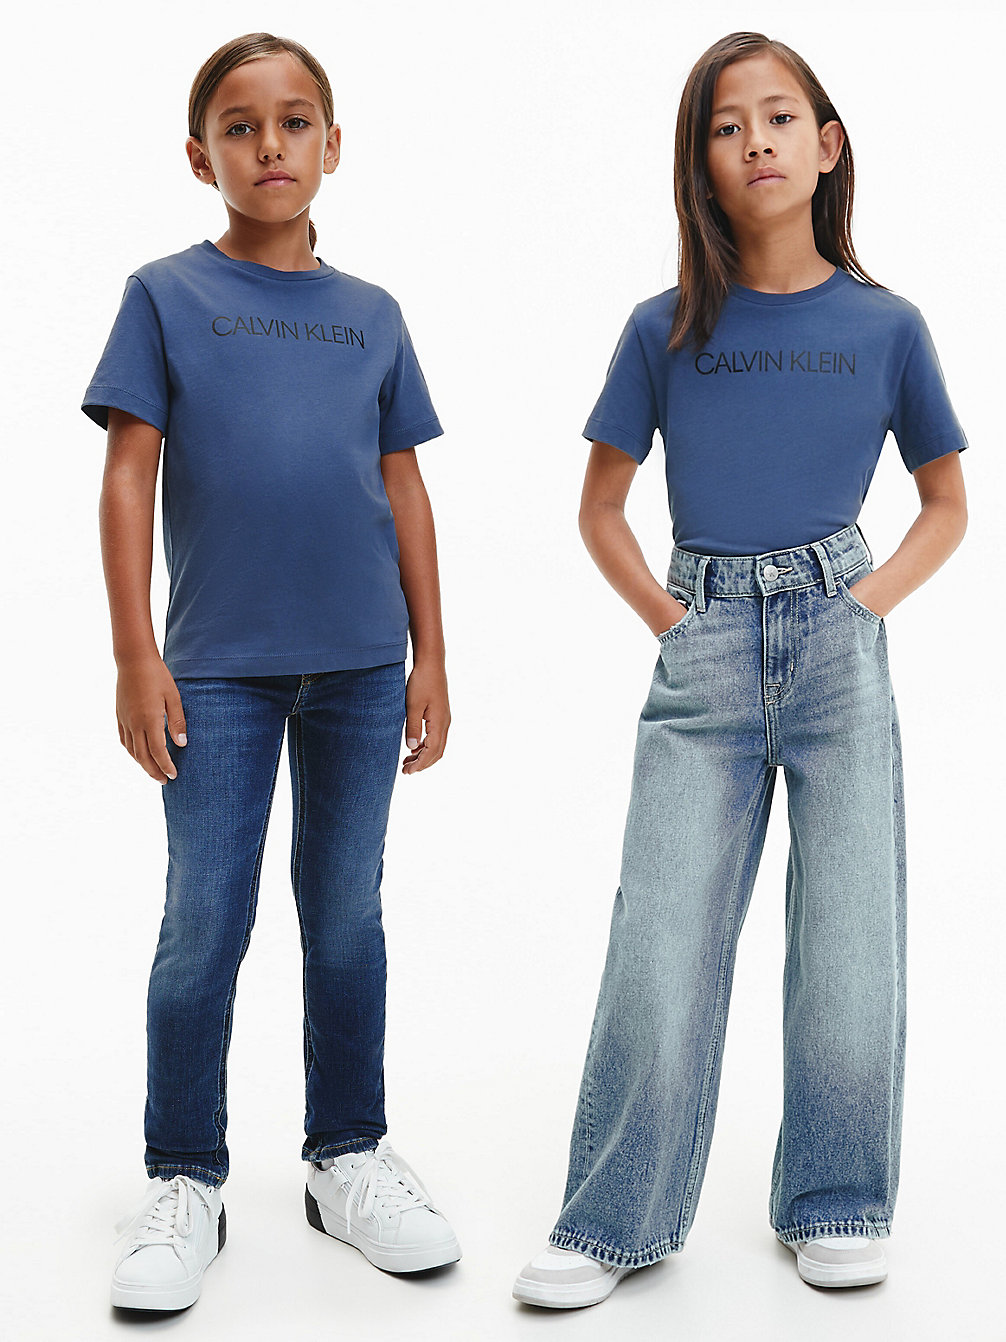 AEGEAN SEA > Unisex Logo-T-Shirt Aus Bio-Baumwolle > undefined kids unisex - Calvin Klein